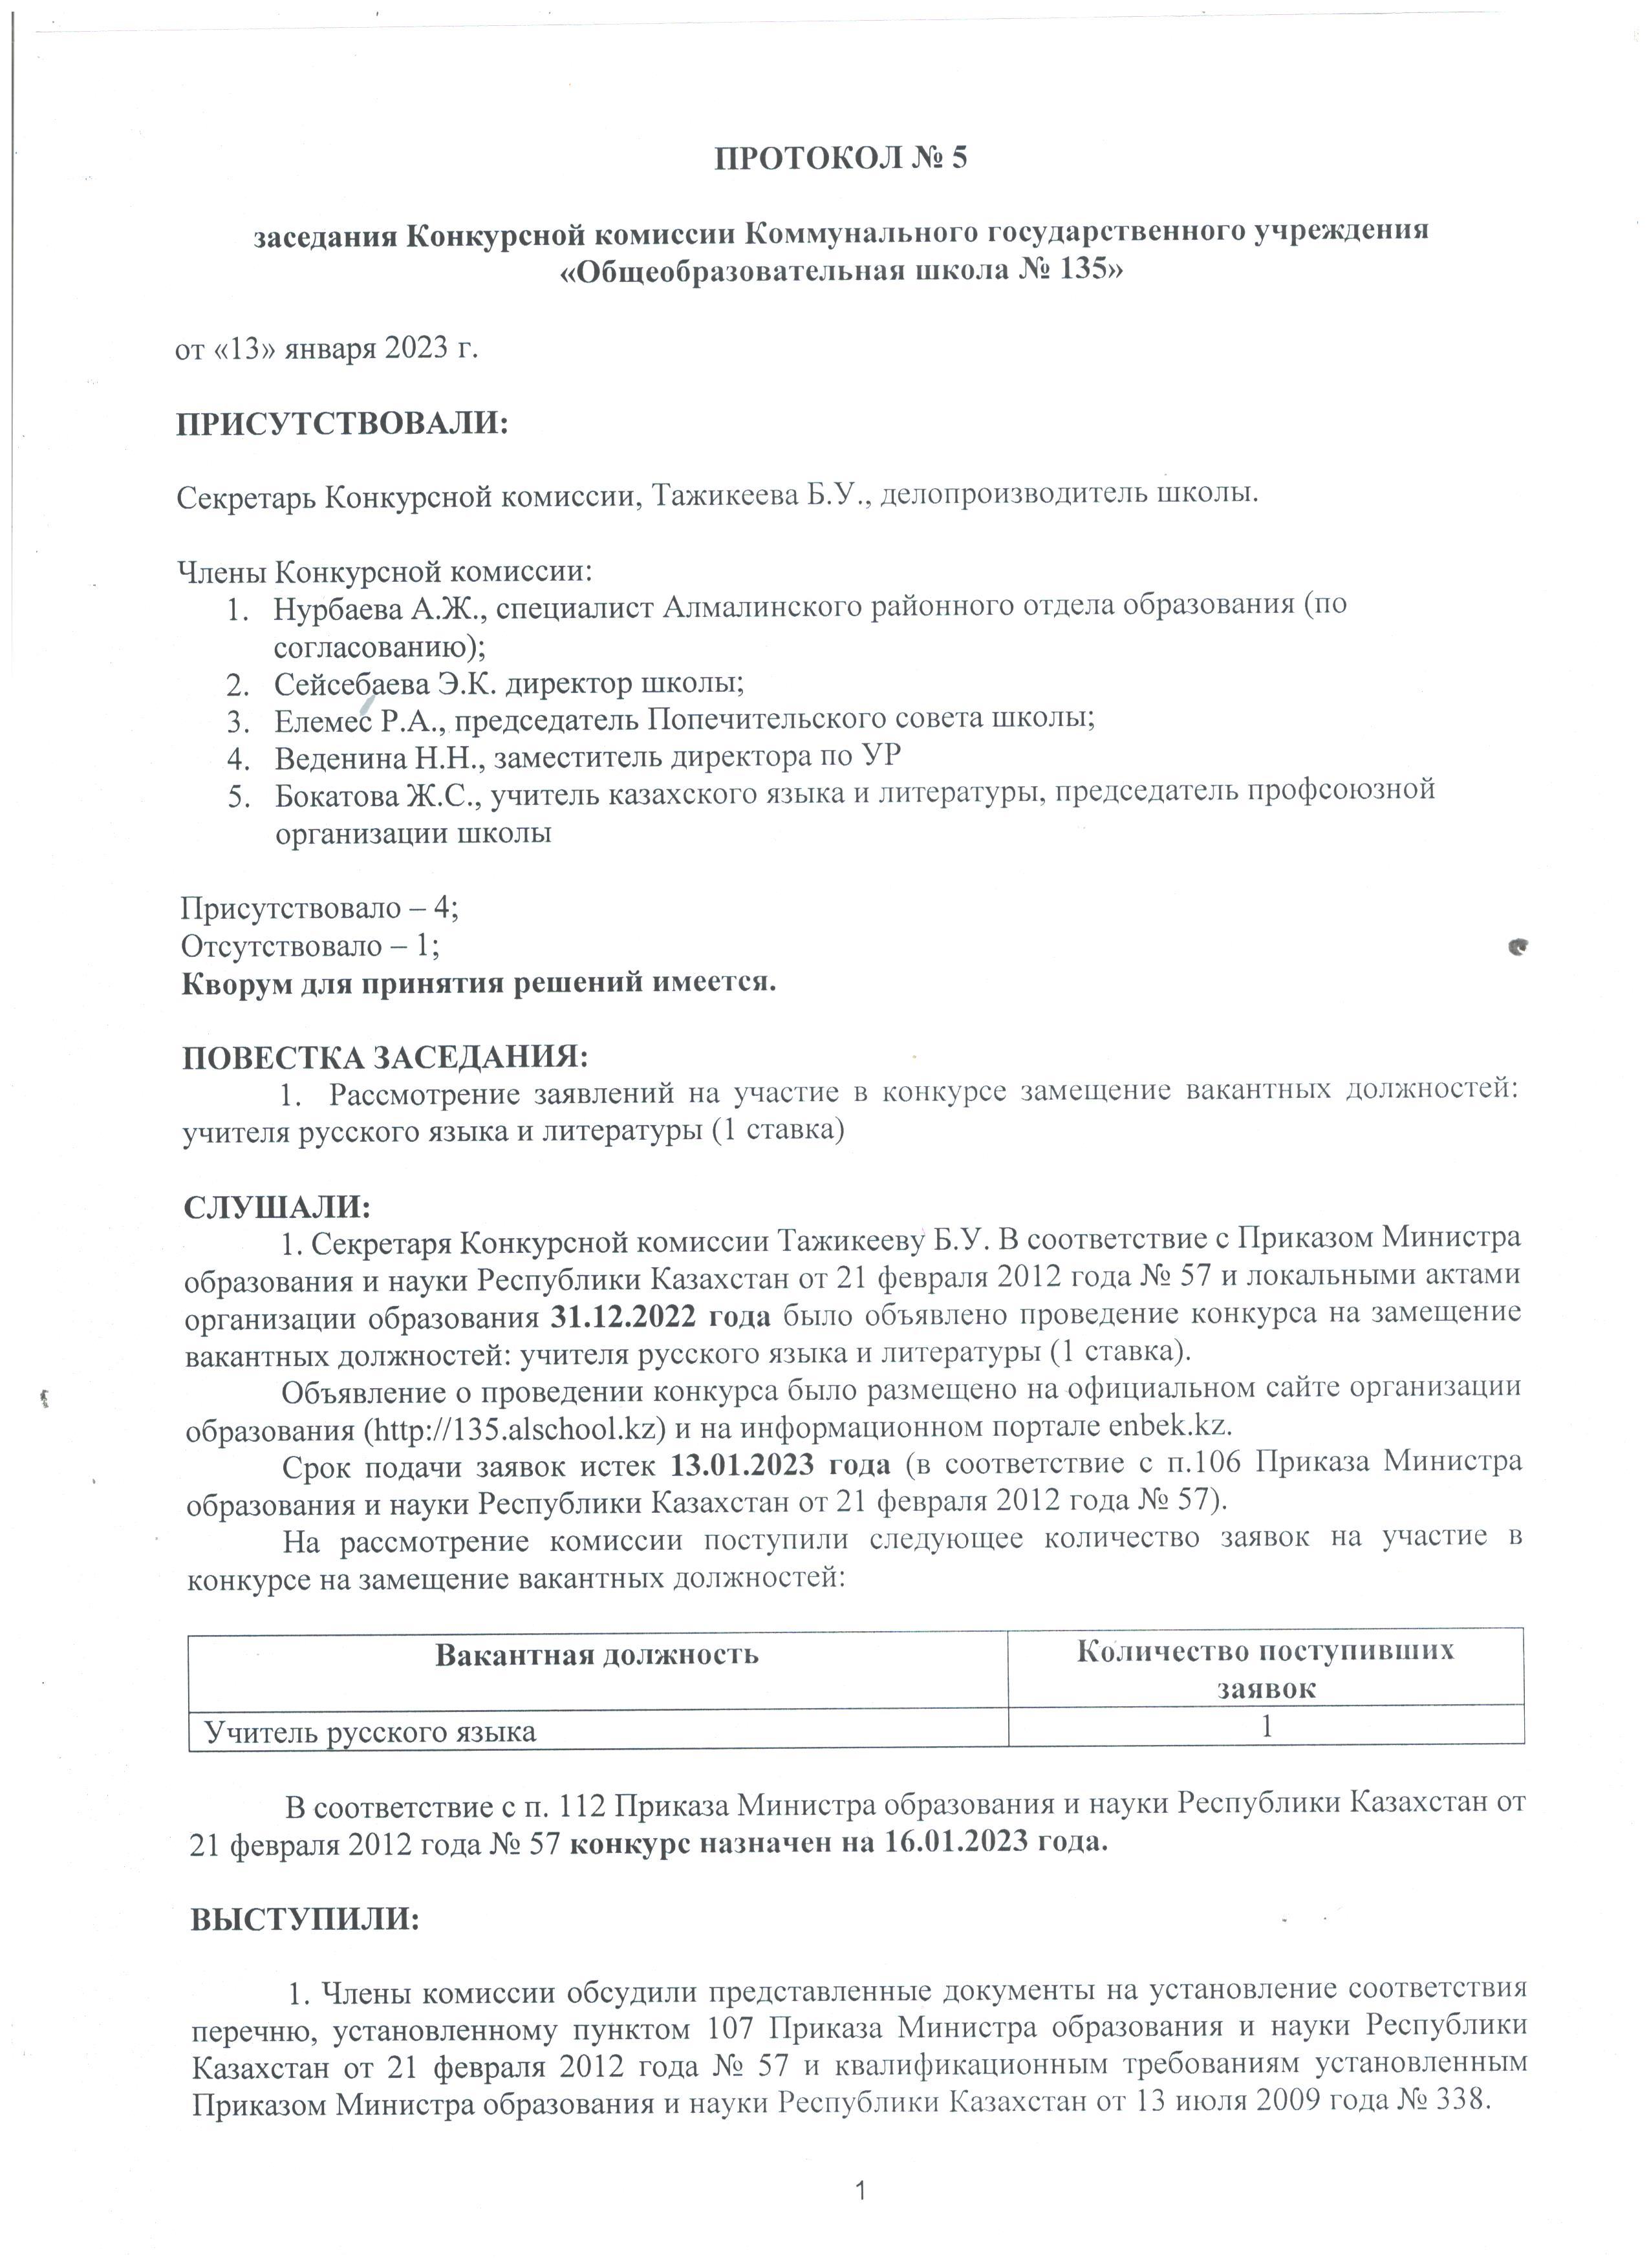 протокол №5 заседания Конкурсной комиссии КГУ "ОШ №135"